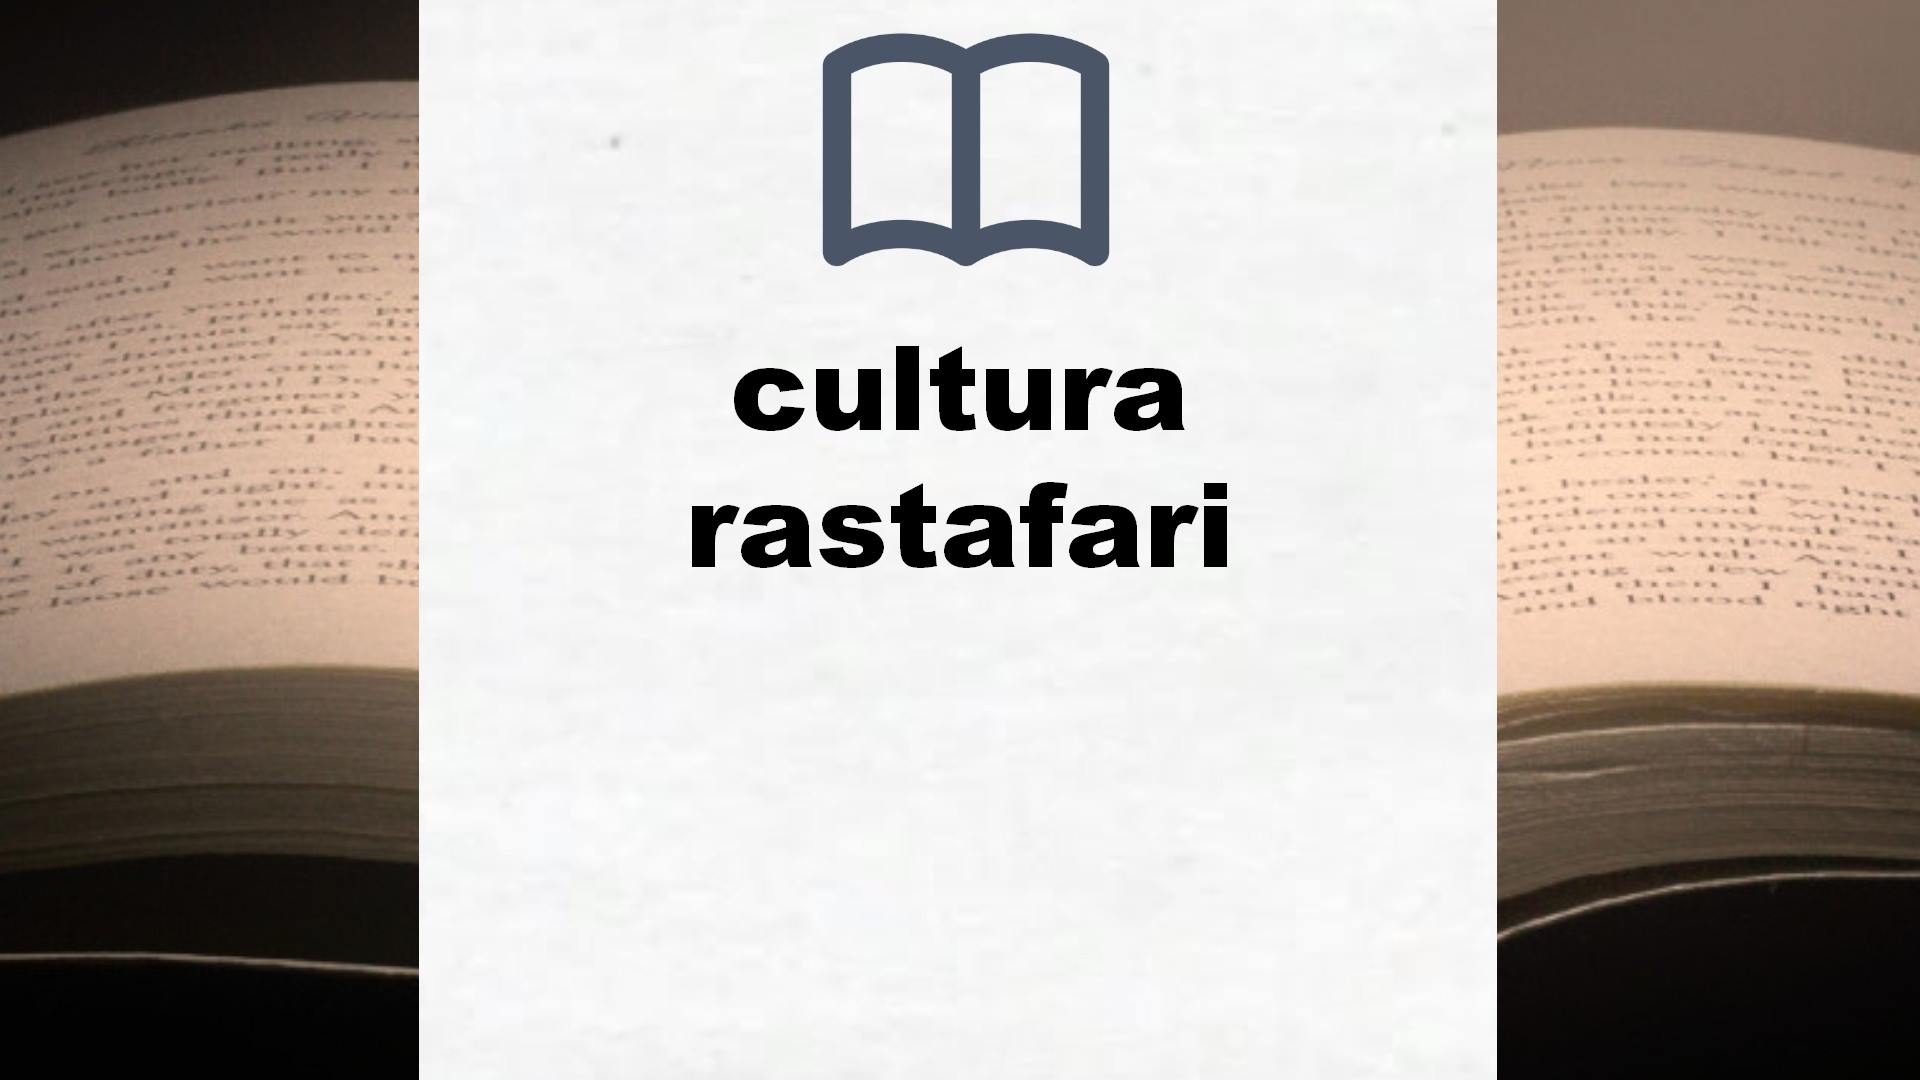 Libros sobre cultura rastafari